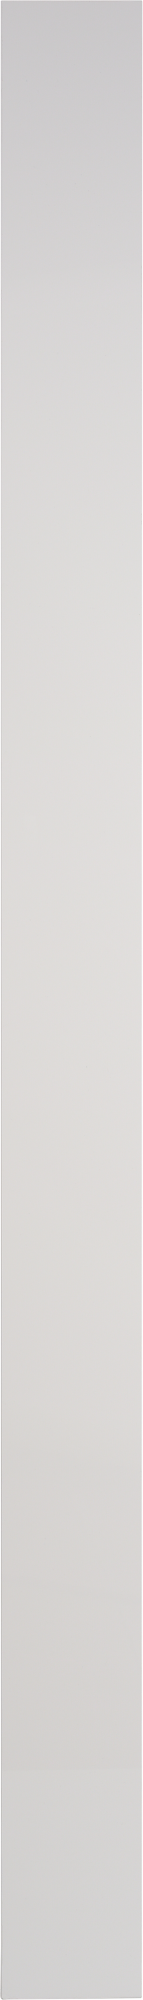 Puerta para mueble de cocina atenas blanco brillo h 214.4 x l 15 cm